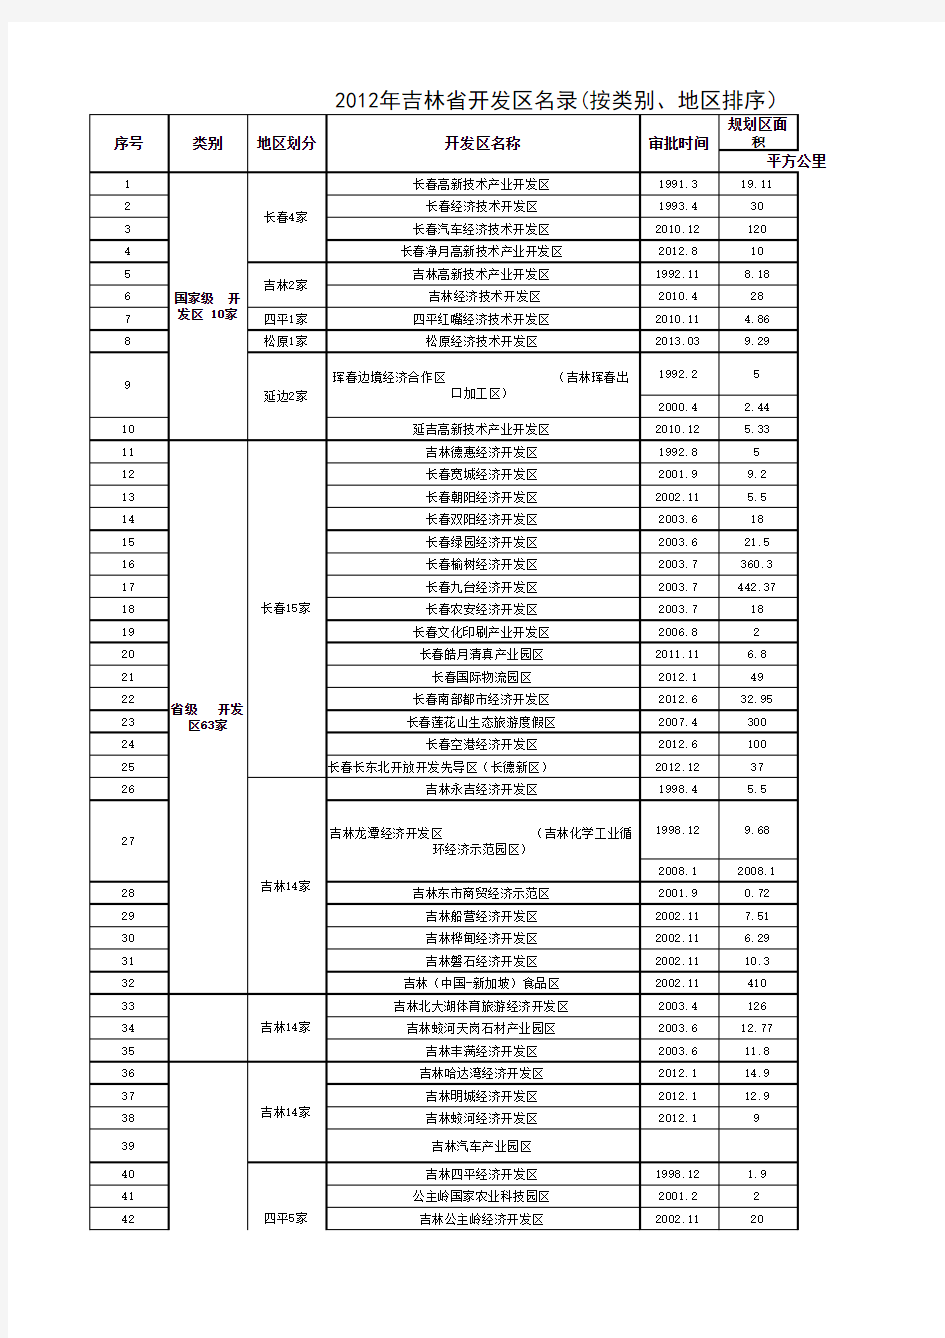 吉林省开发区名录(截至2013年6月)